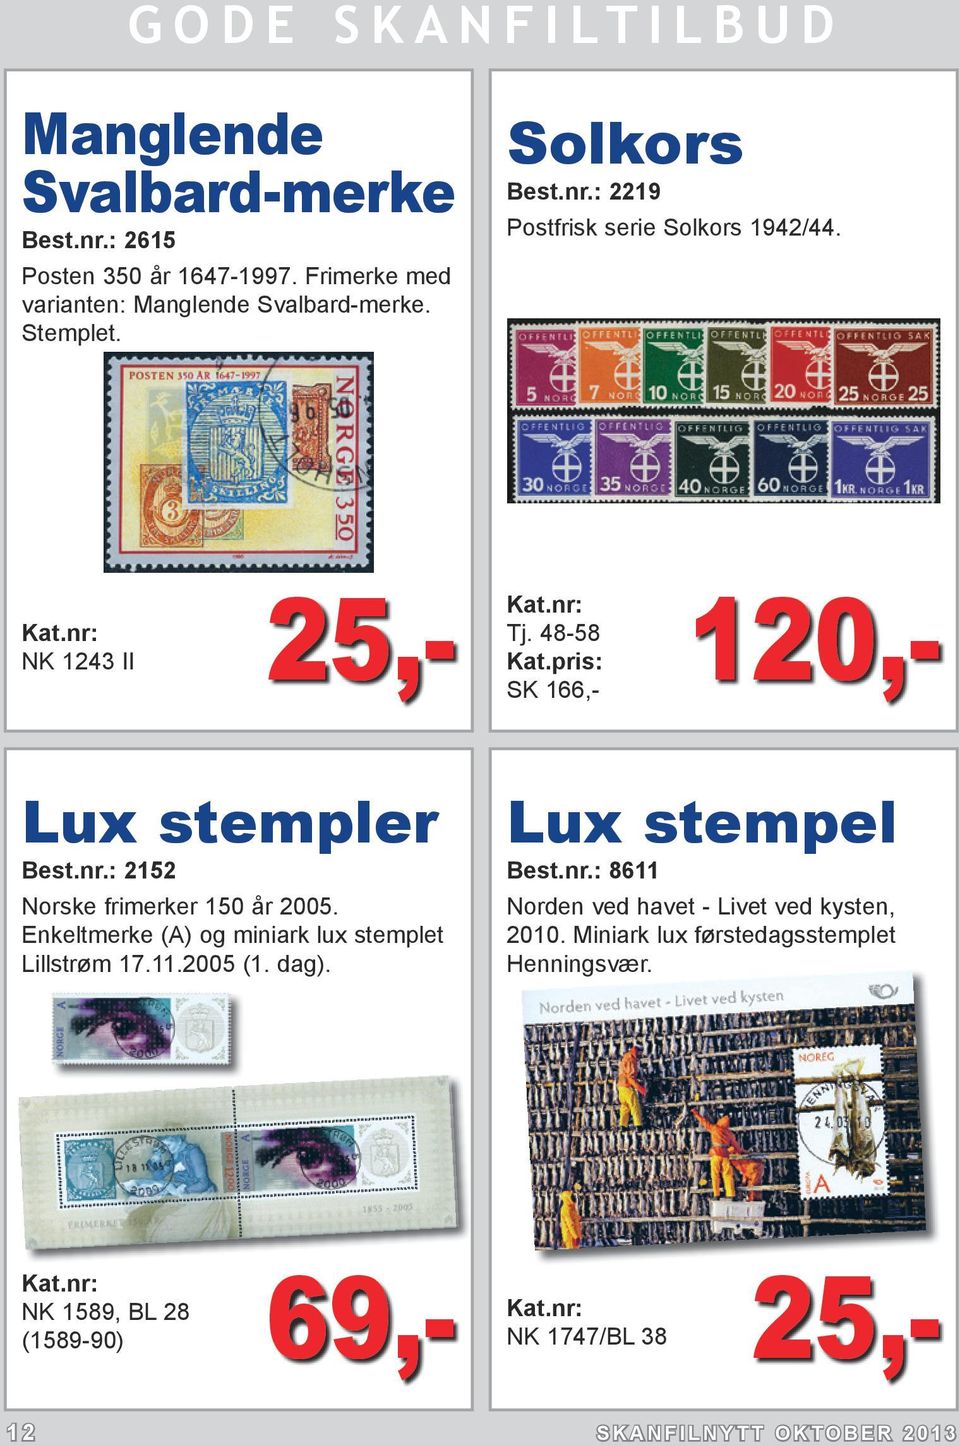 Enkeltmerke (A) og miniark lux stemplet Lillstrøm 17.11.2005 (1. dag). Lux stempel Best.nr.